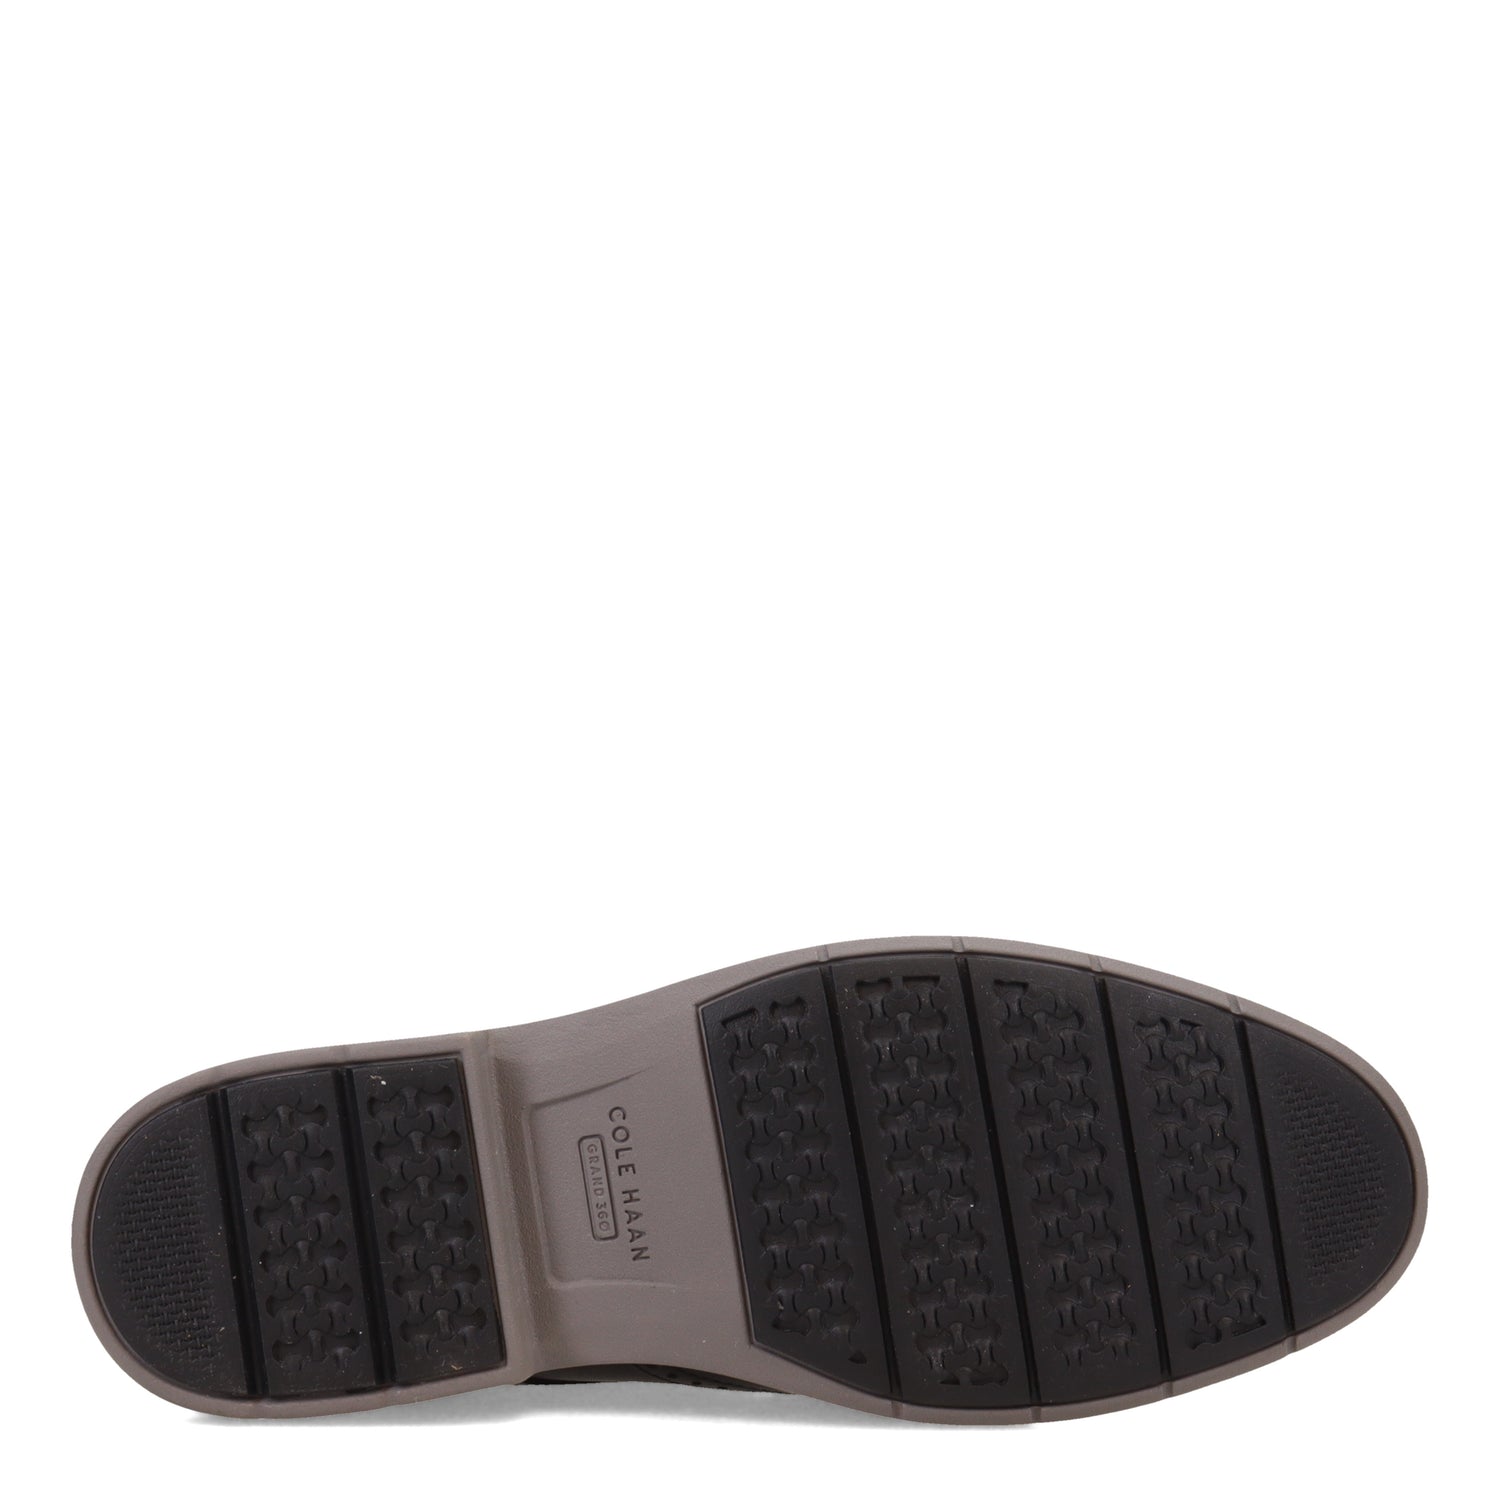 Peltz Shoes  Men's Cole Haan Go-To Wingtip Oxford BLACK / GRAY C34601